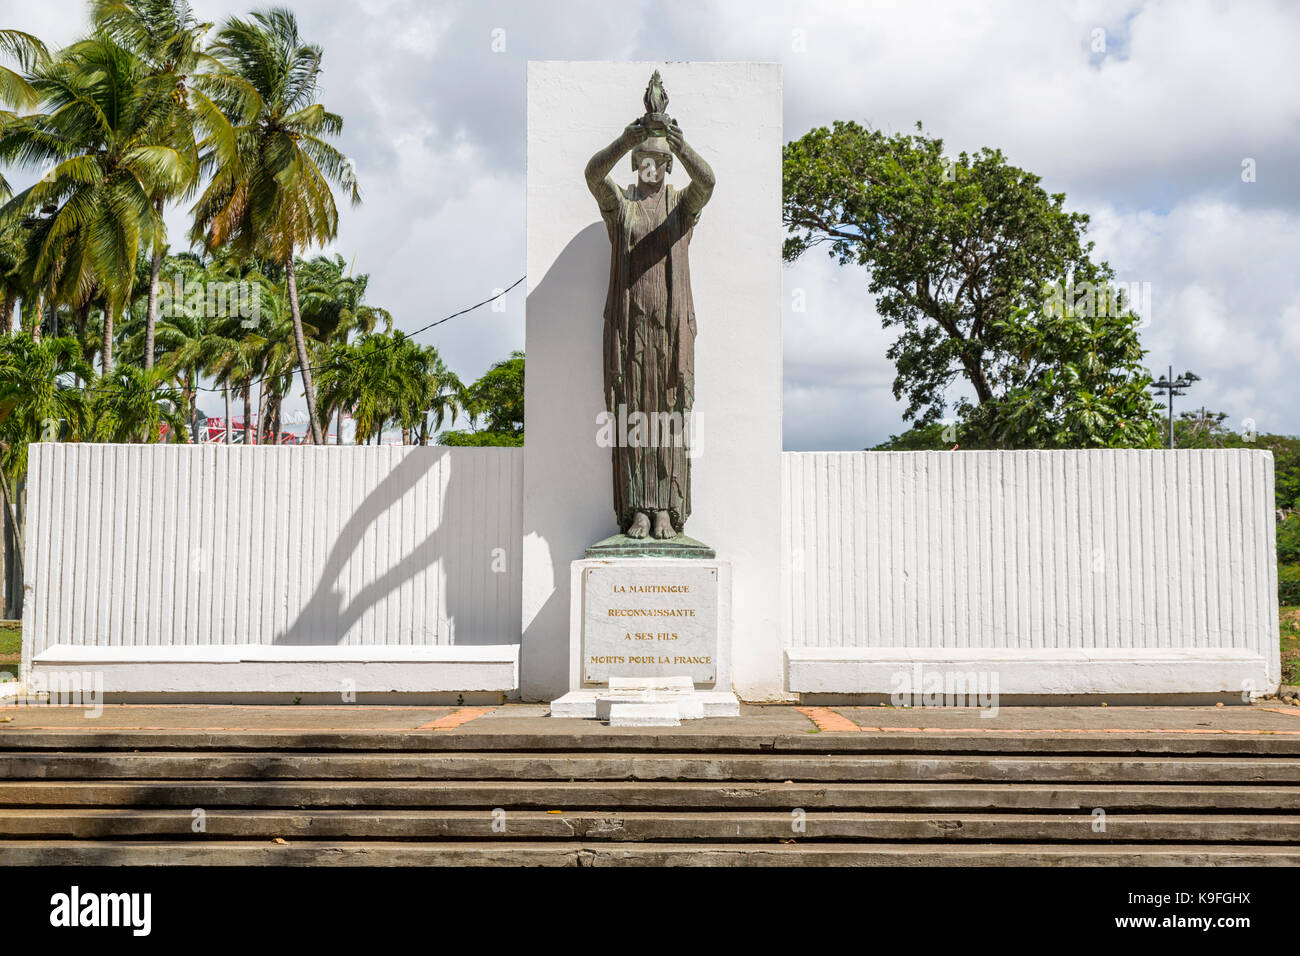 Fort-de-France, Martinique. La savane du Parc. Monument aux morts à la guerre. 'Martinique reconnaît ses fils morts pour la France". Banque D'Images